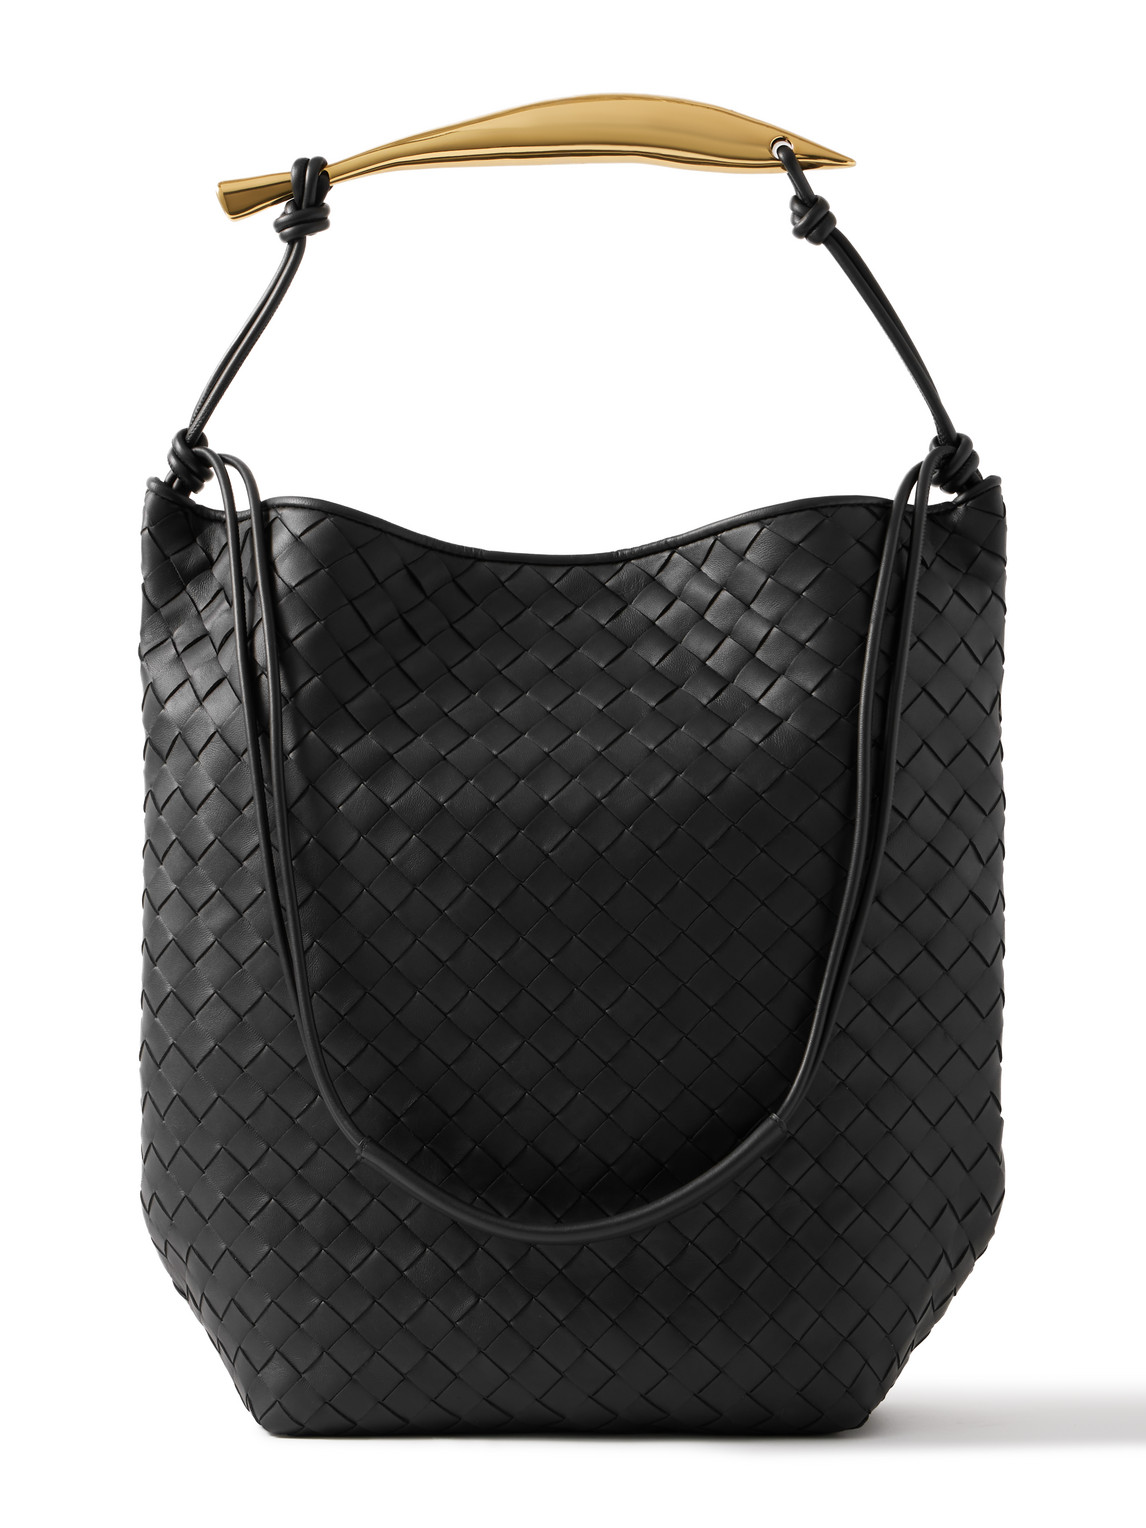 Bottega Veneta Embellished Intrecciato Leather Tote Bag In Black